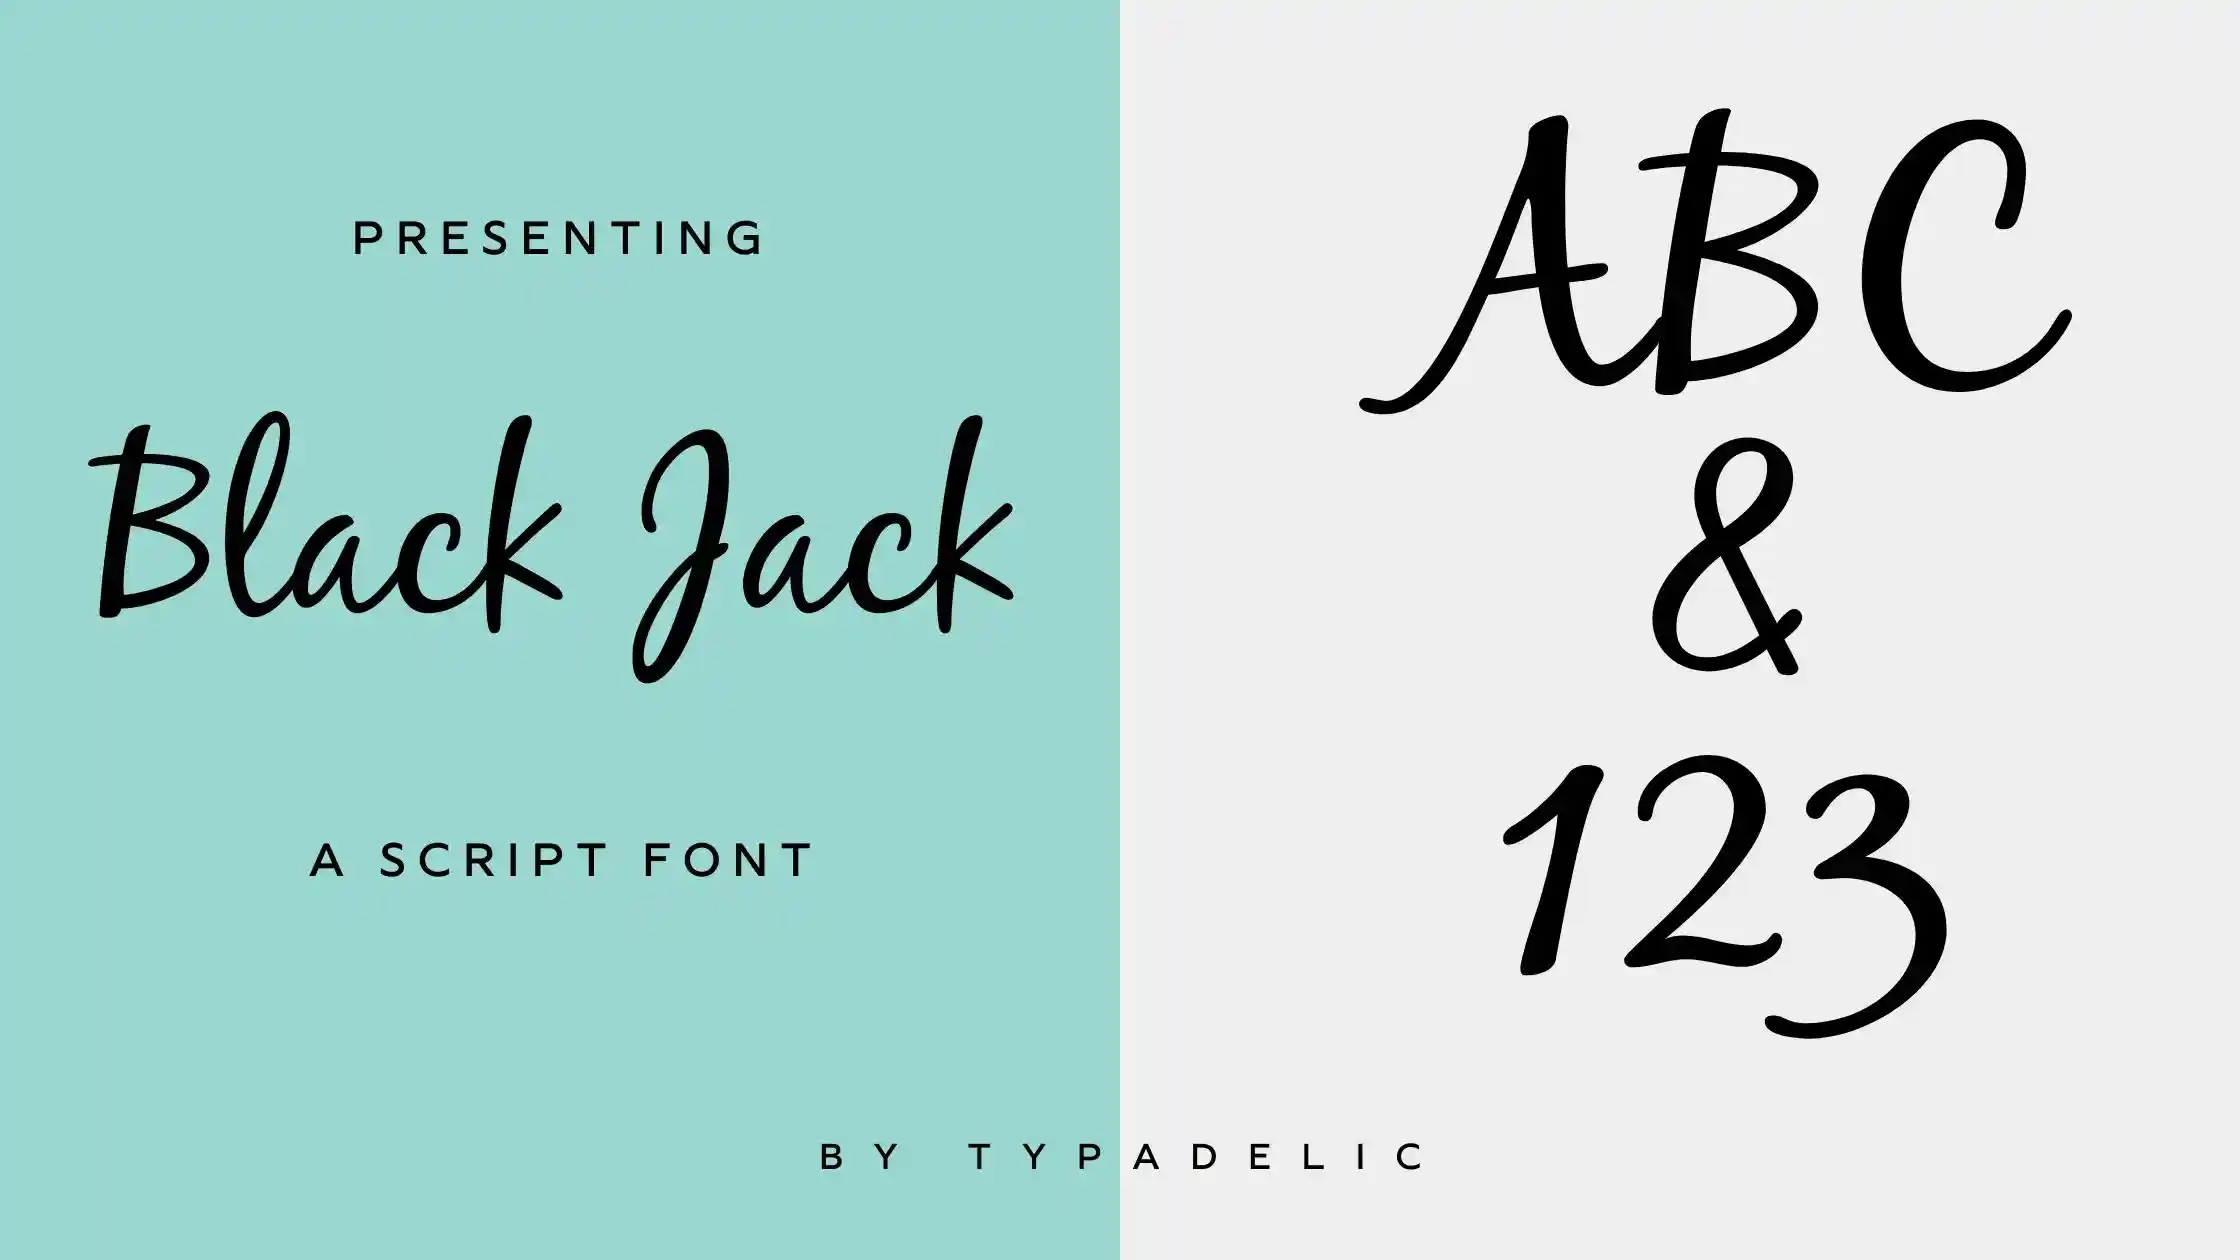 Black Jack Font Download